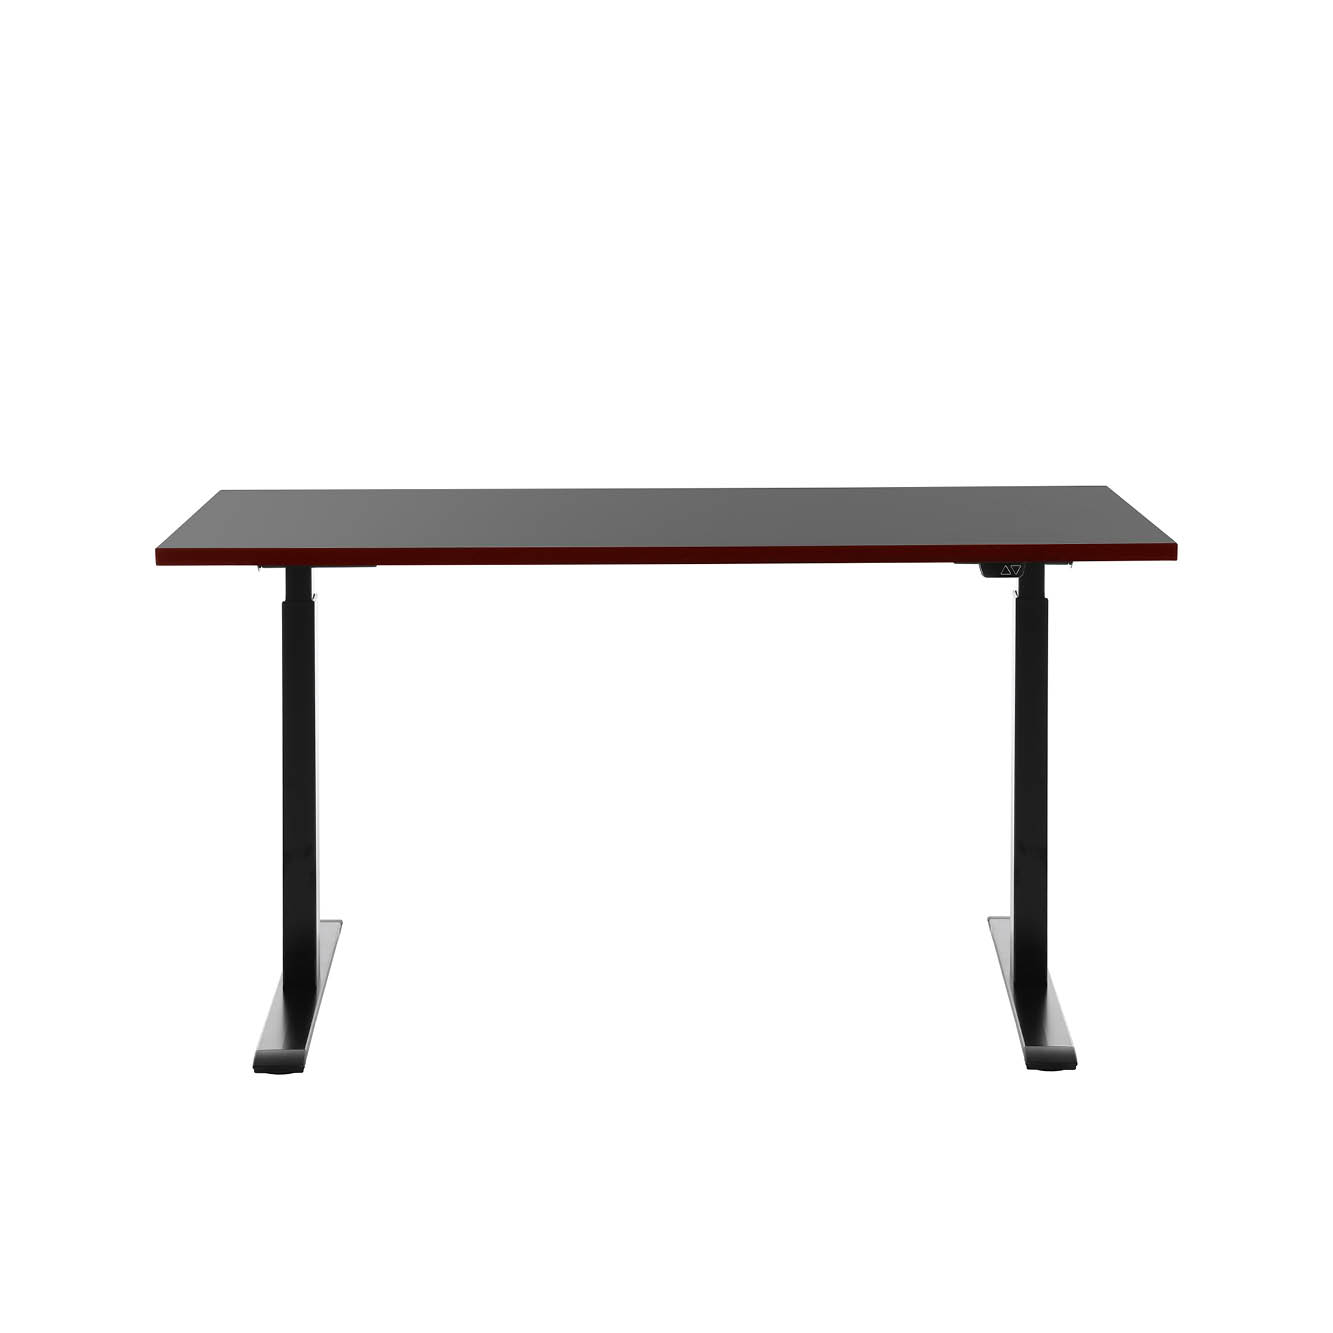 140 x 60 cm Schreibtisch Topstar Ergo E-Table höhenverstellbar - schwarz, schwarz-rot